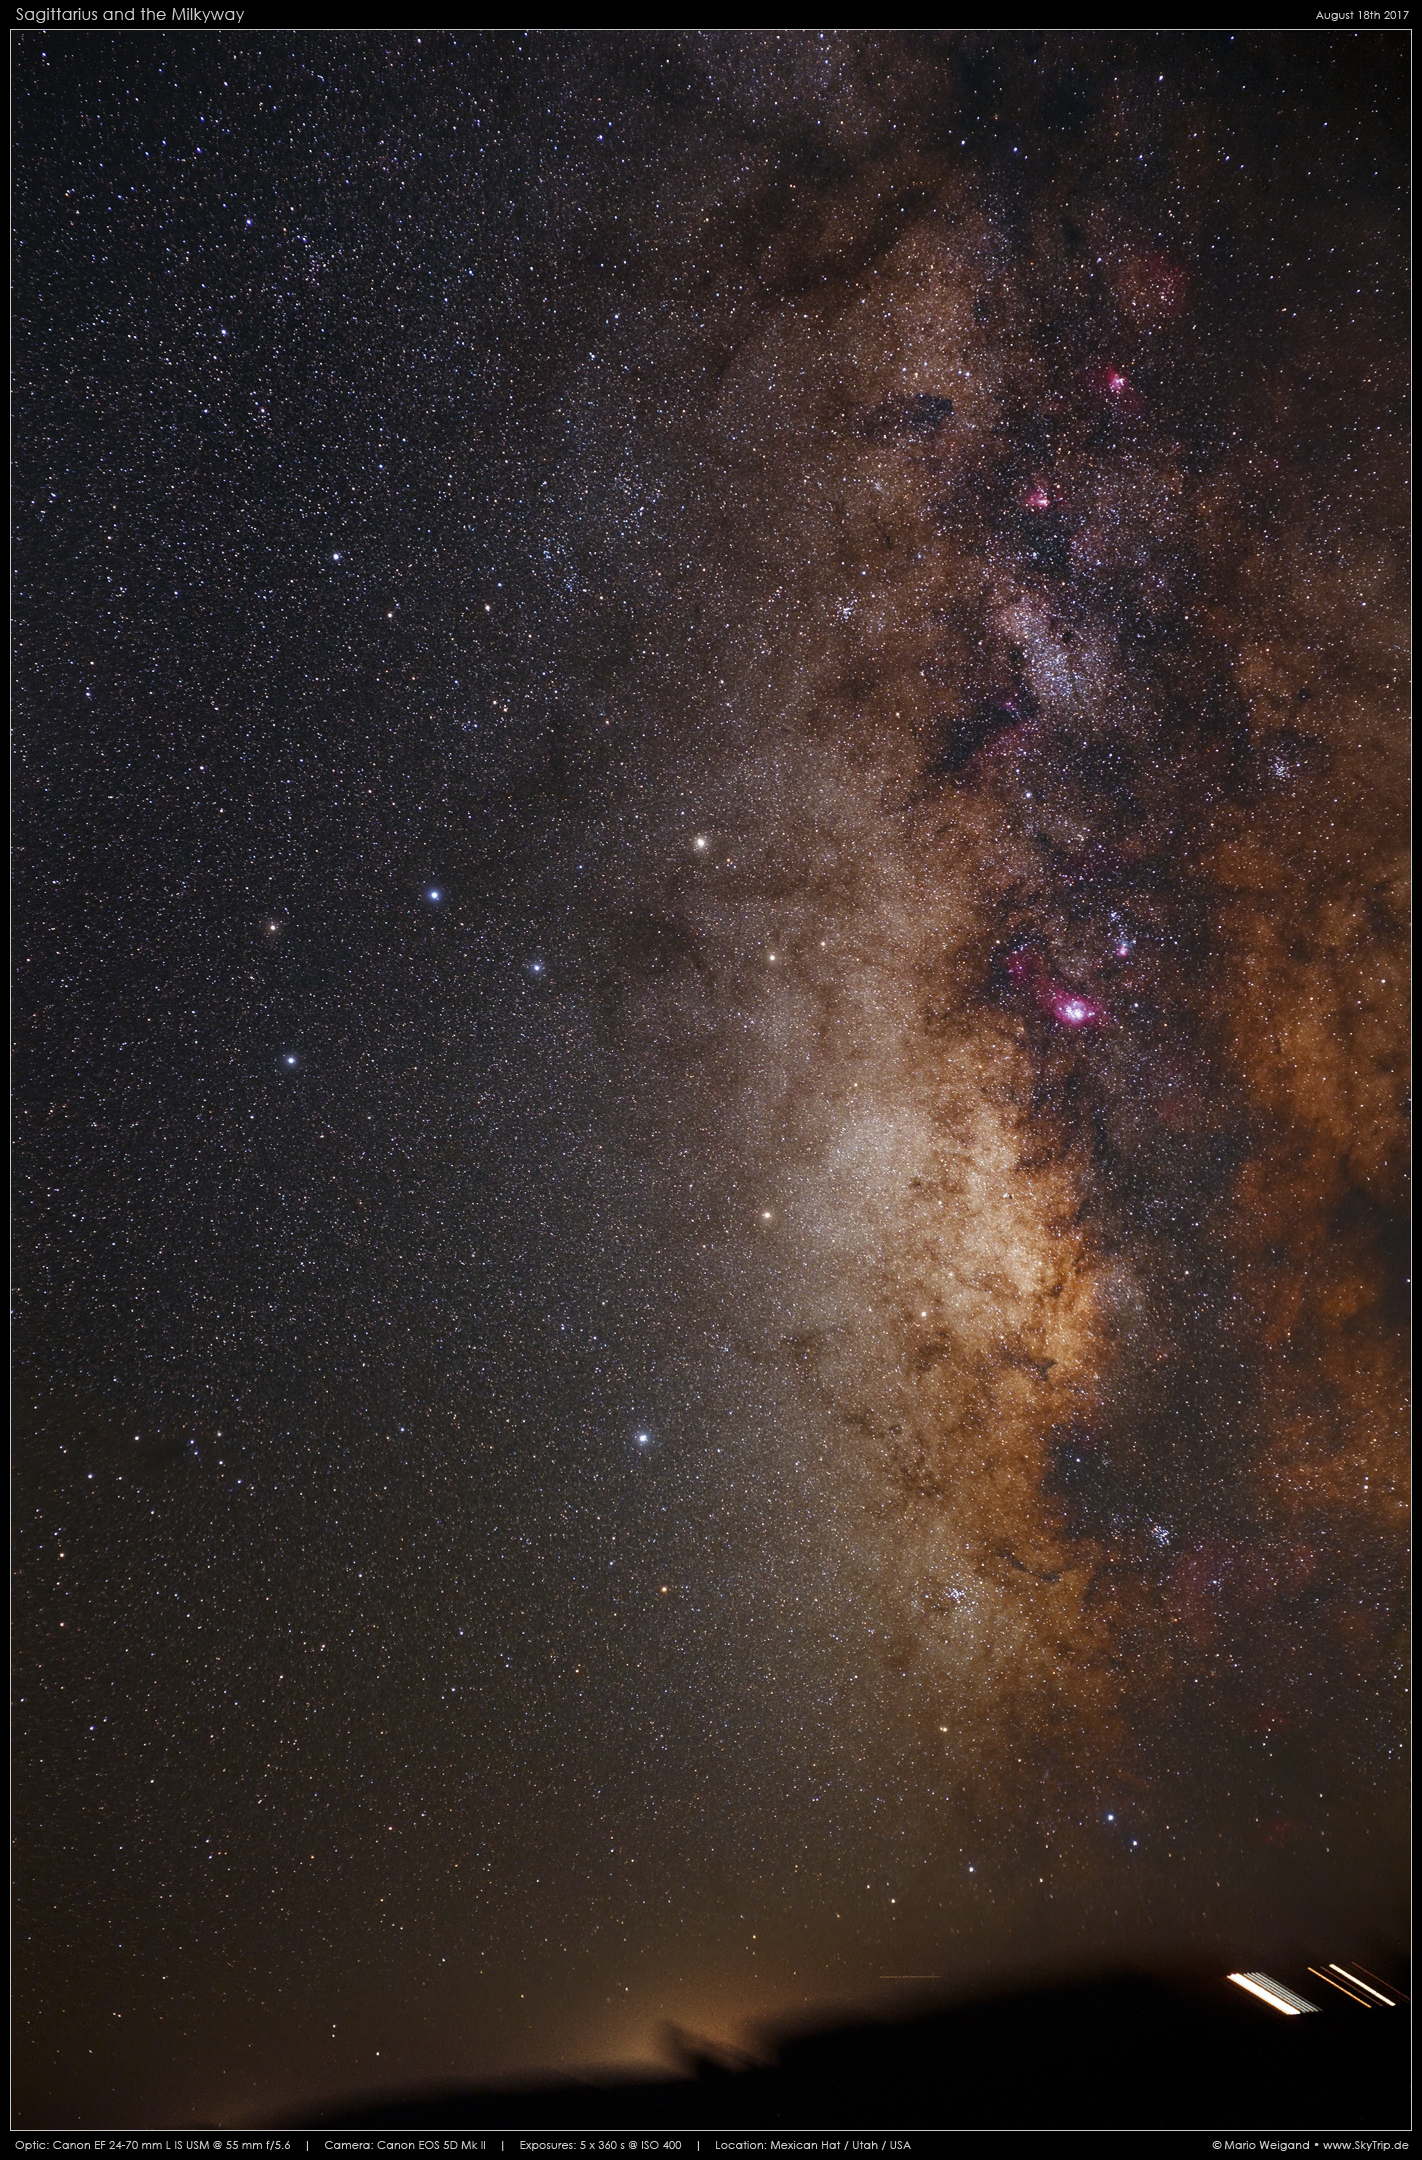 Sternbild Schütze mit Sagittarius-Wolke